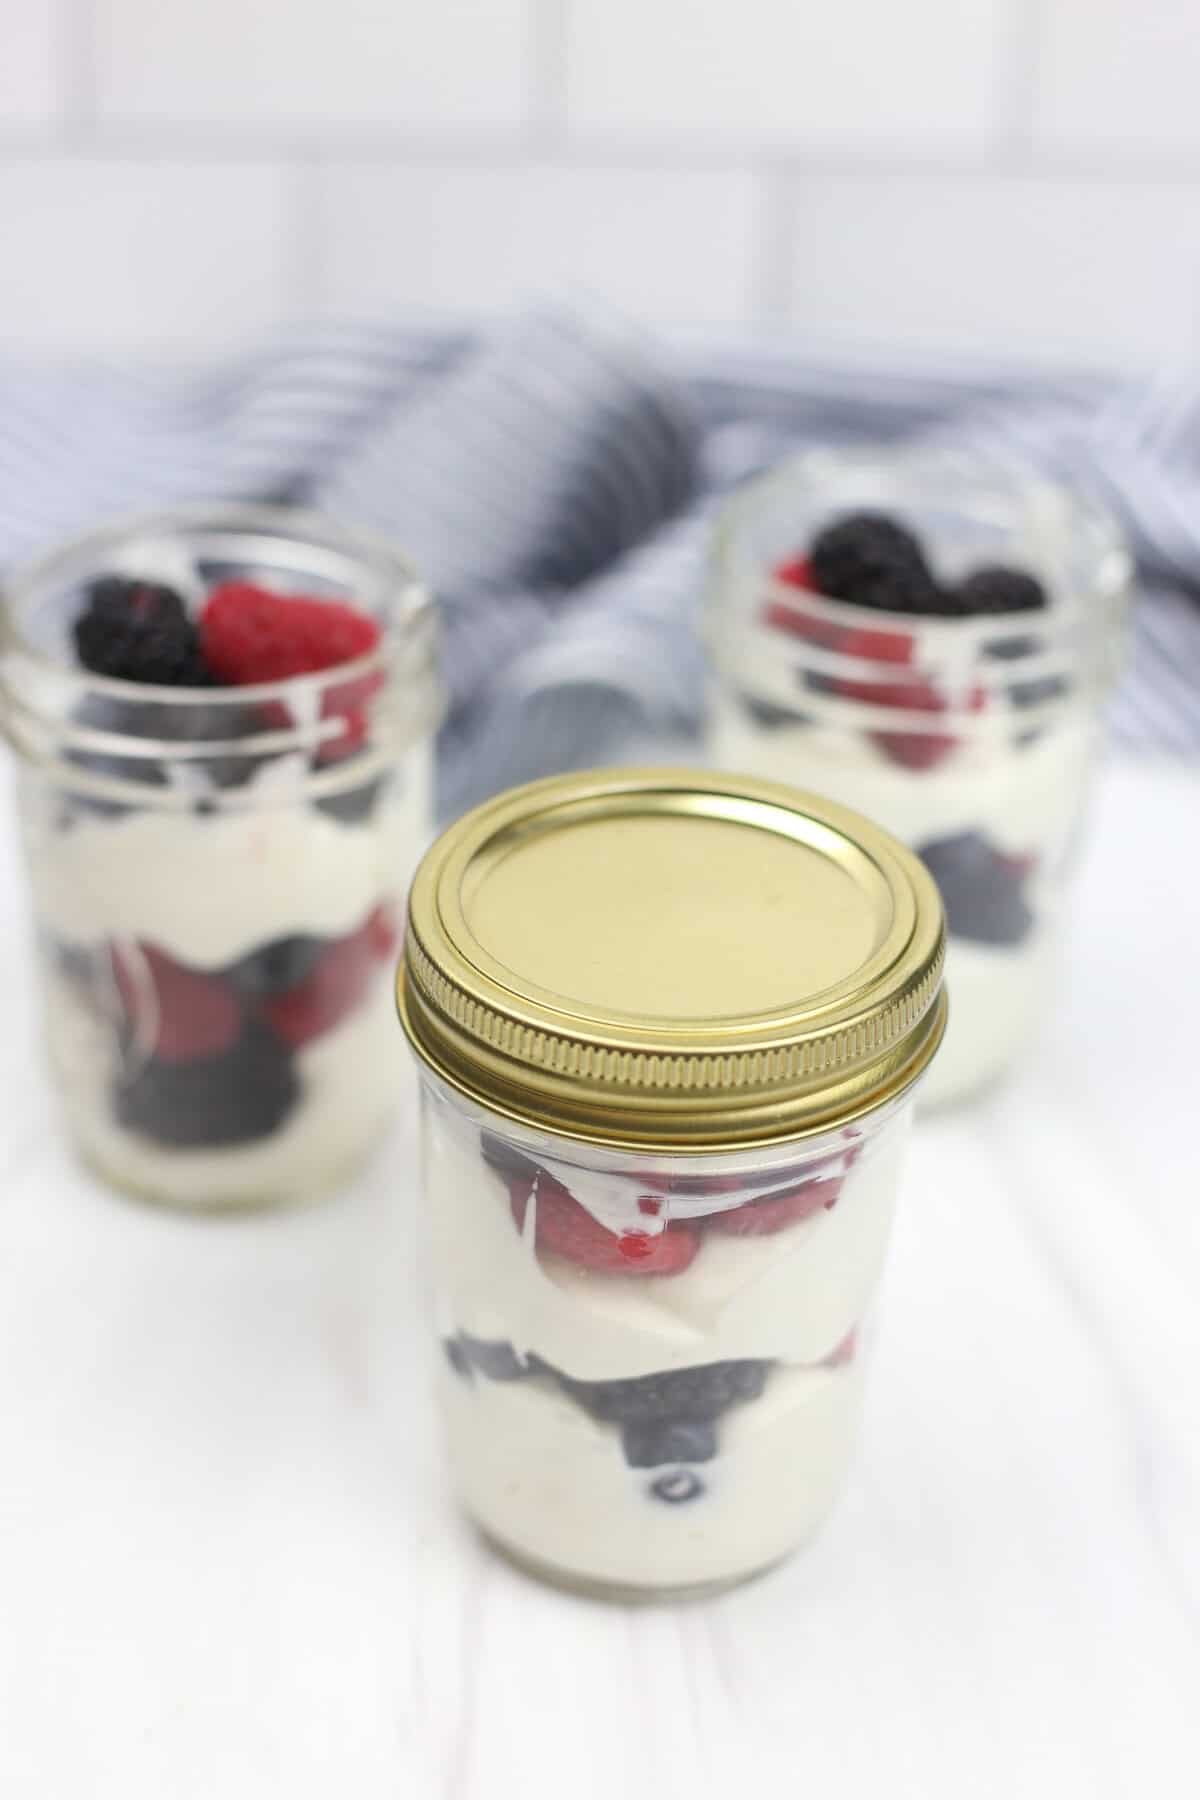 Make ahead yogurt parfait in a mason jar with lid.